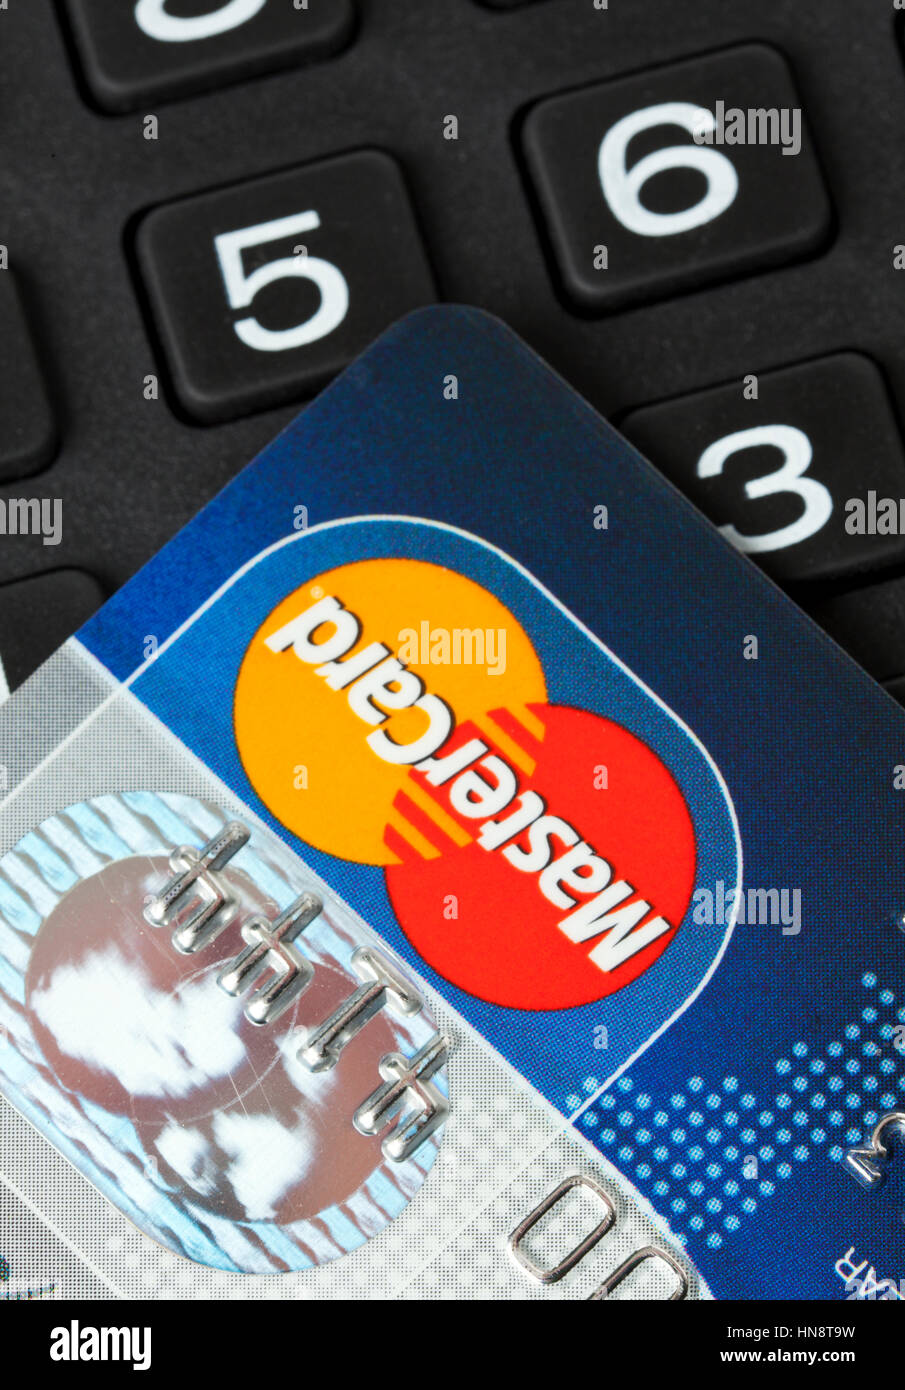 Nahaufnahme von MasterCard Kreditkarte auf Ziffernblock. MasterCard ist eine der größten Kreditkartengesellschaften der Welt Stockfoto